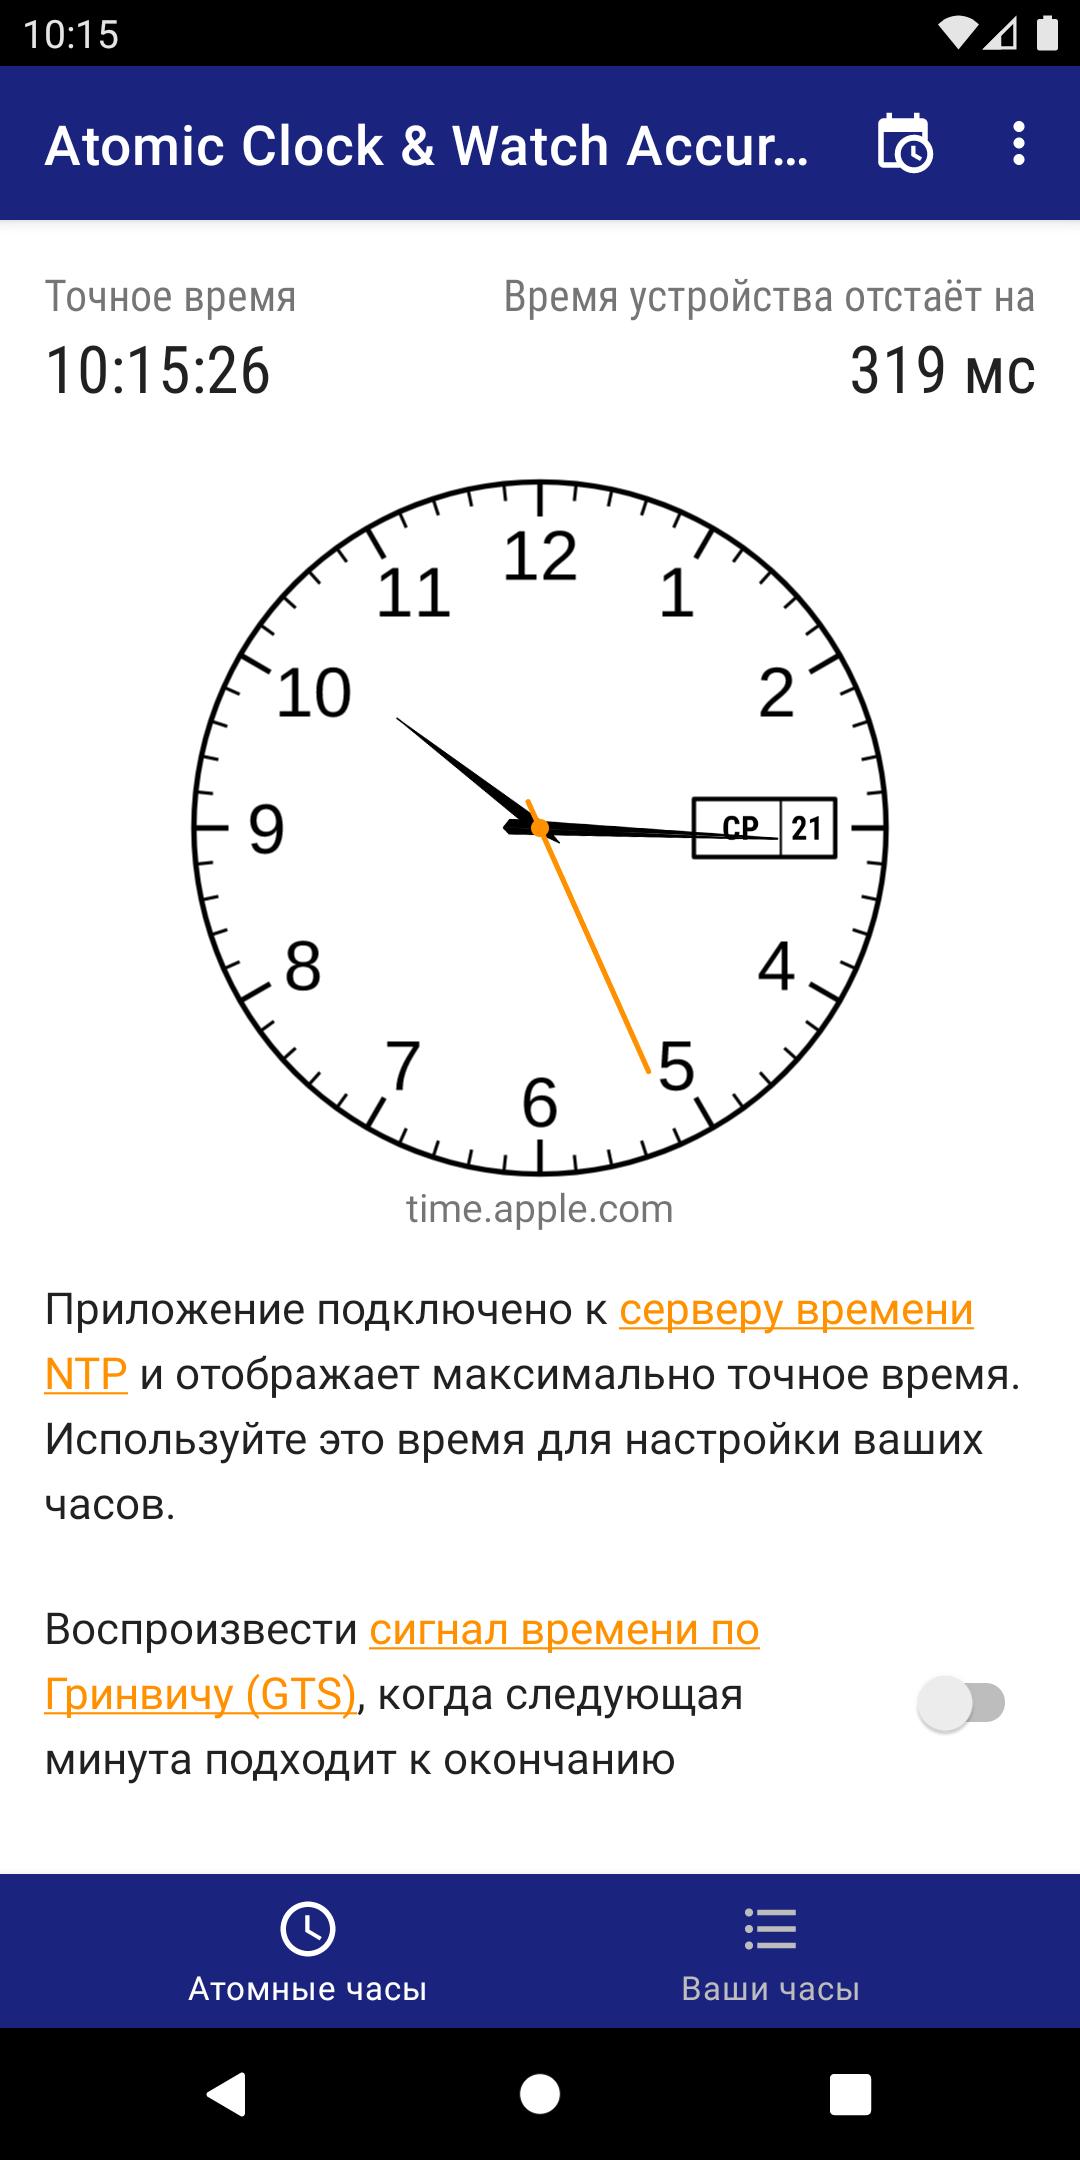 Установить часы точно. Atomic Clock 4pda. Watch accuracy Meter как пользоваться приложением. Atomic Clock Windows. Атомные часы точное время.